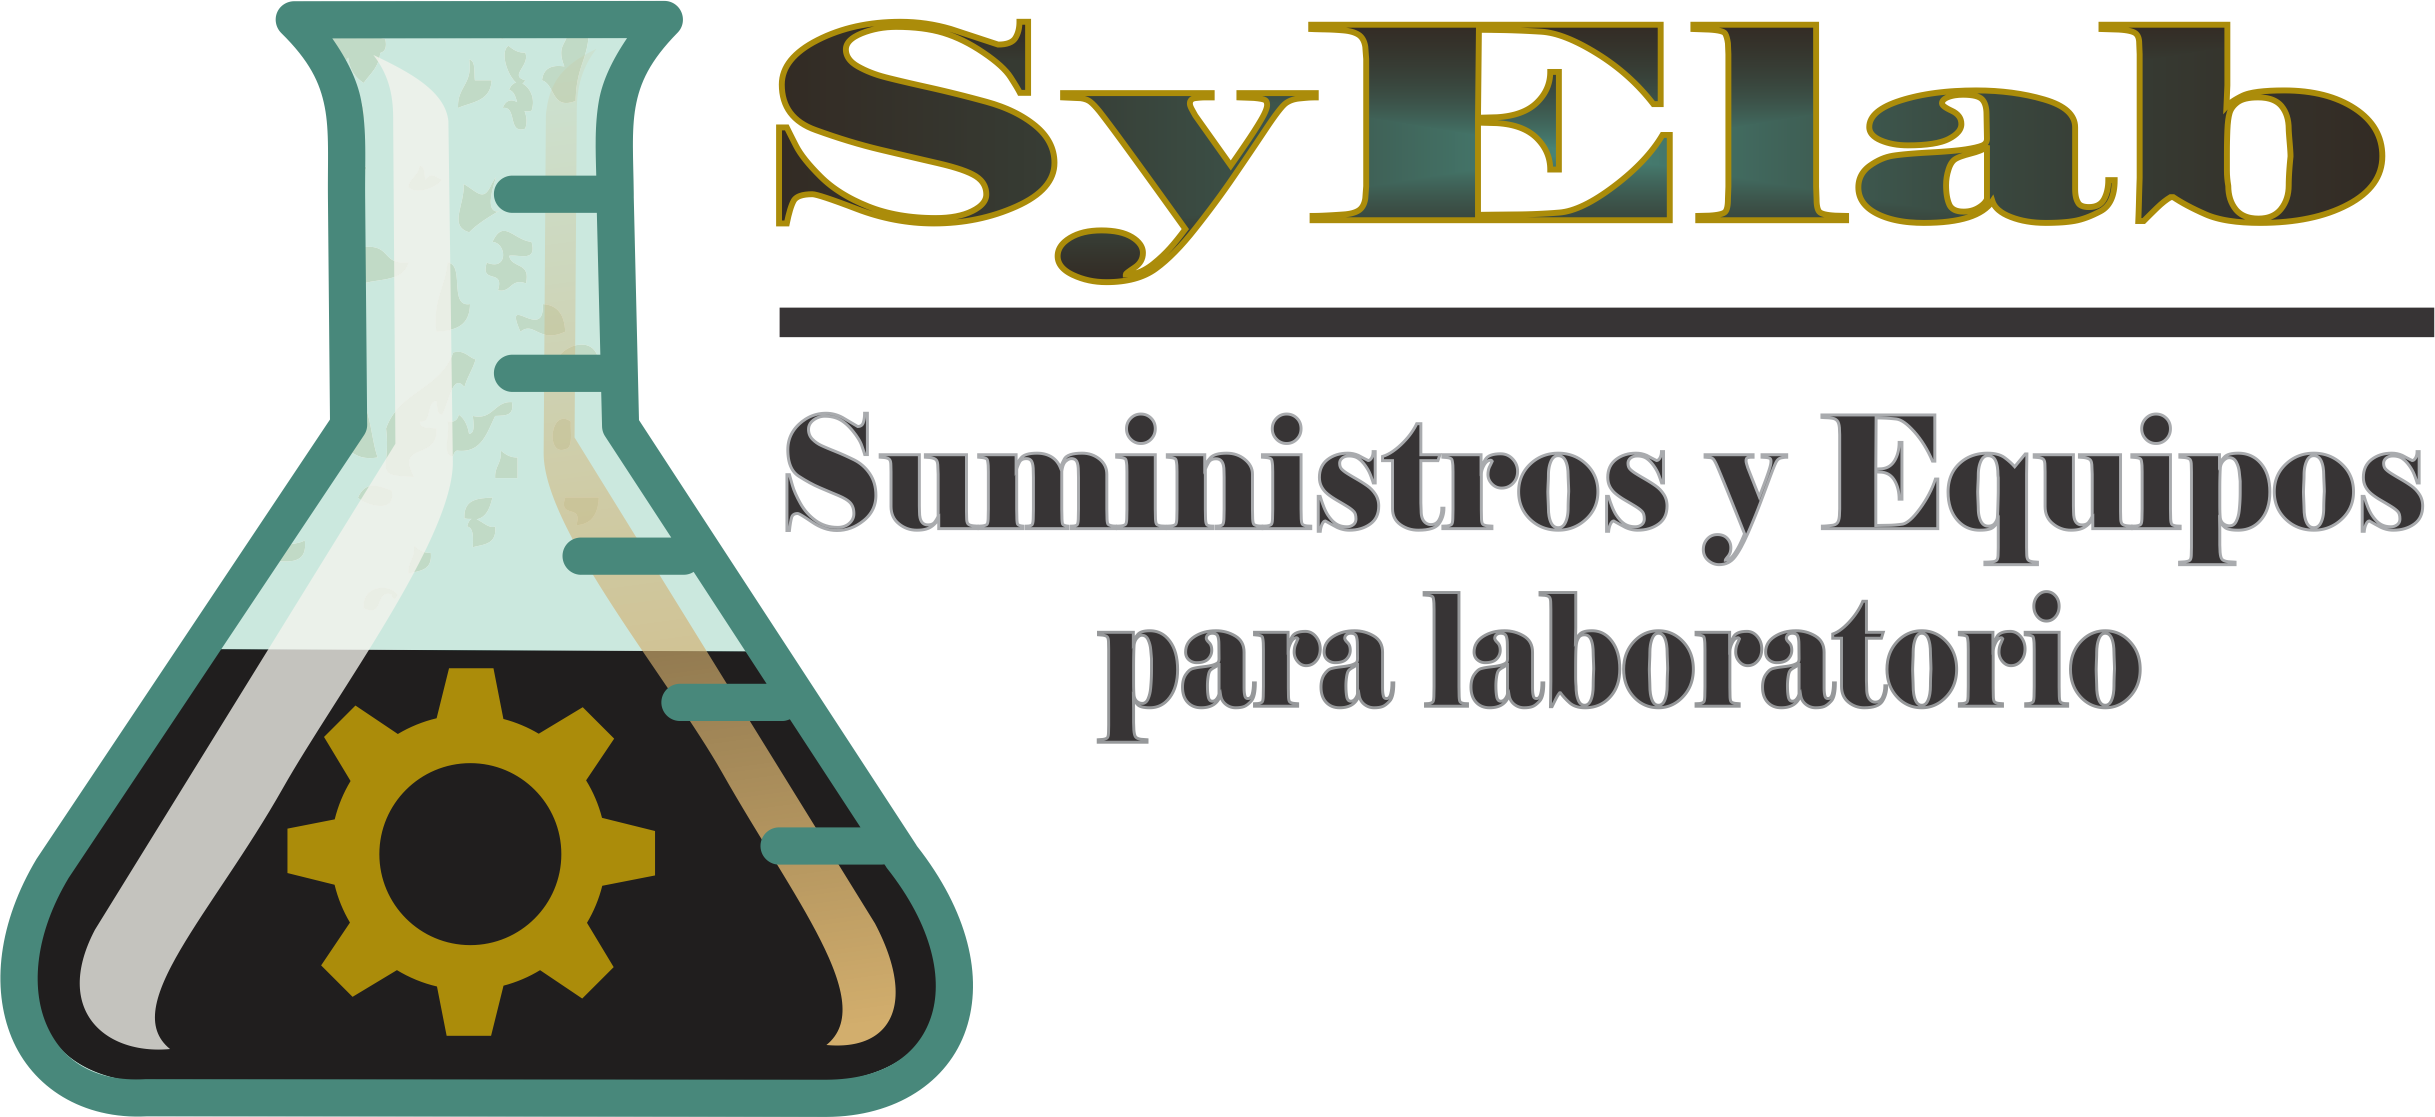 SyElab